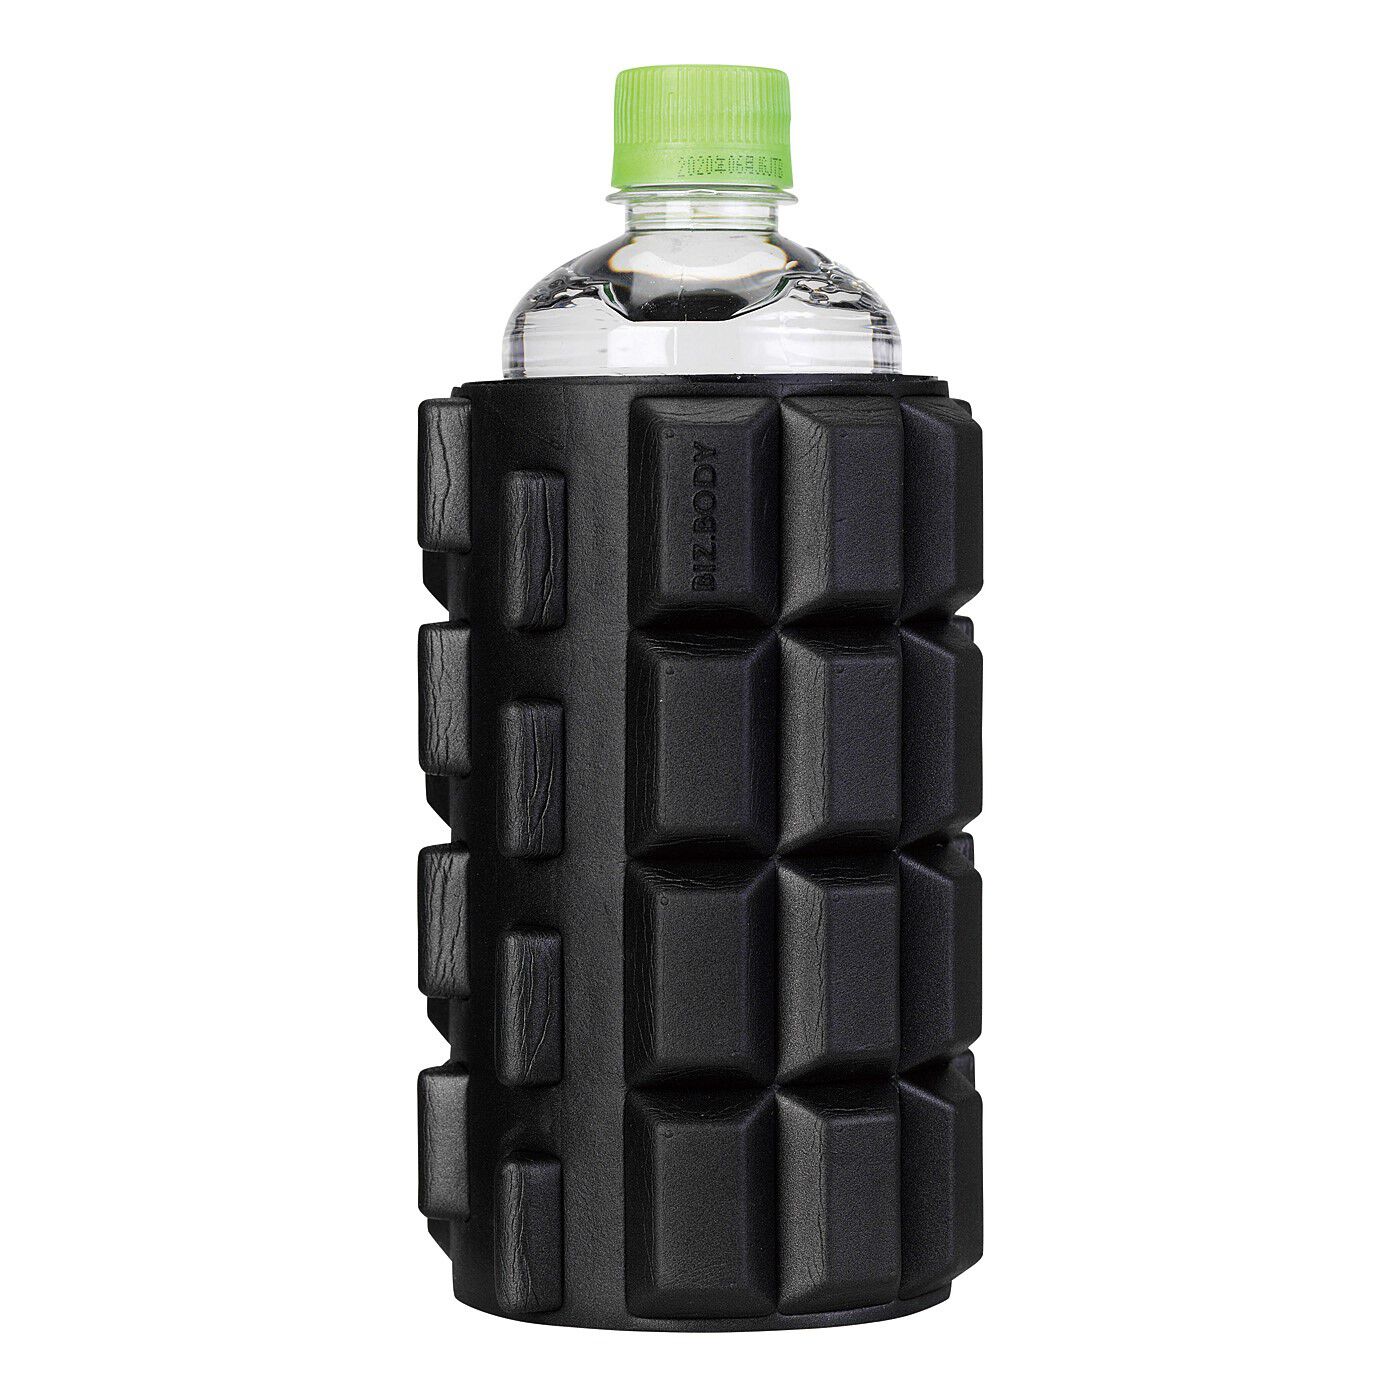 flufeel|転がすだけの筋肉ほぐし　コンパクトなリリースローラー〈ブラック〉|真ん中の空洞部分に500mlのペットボトルがすっぽり。